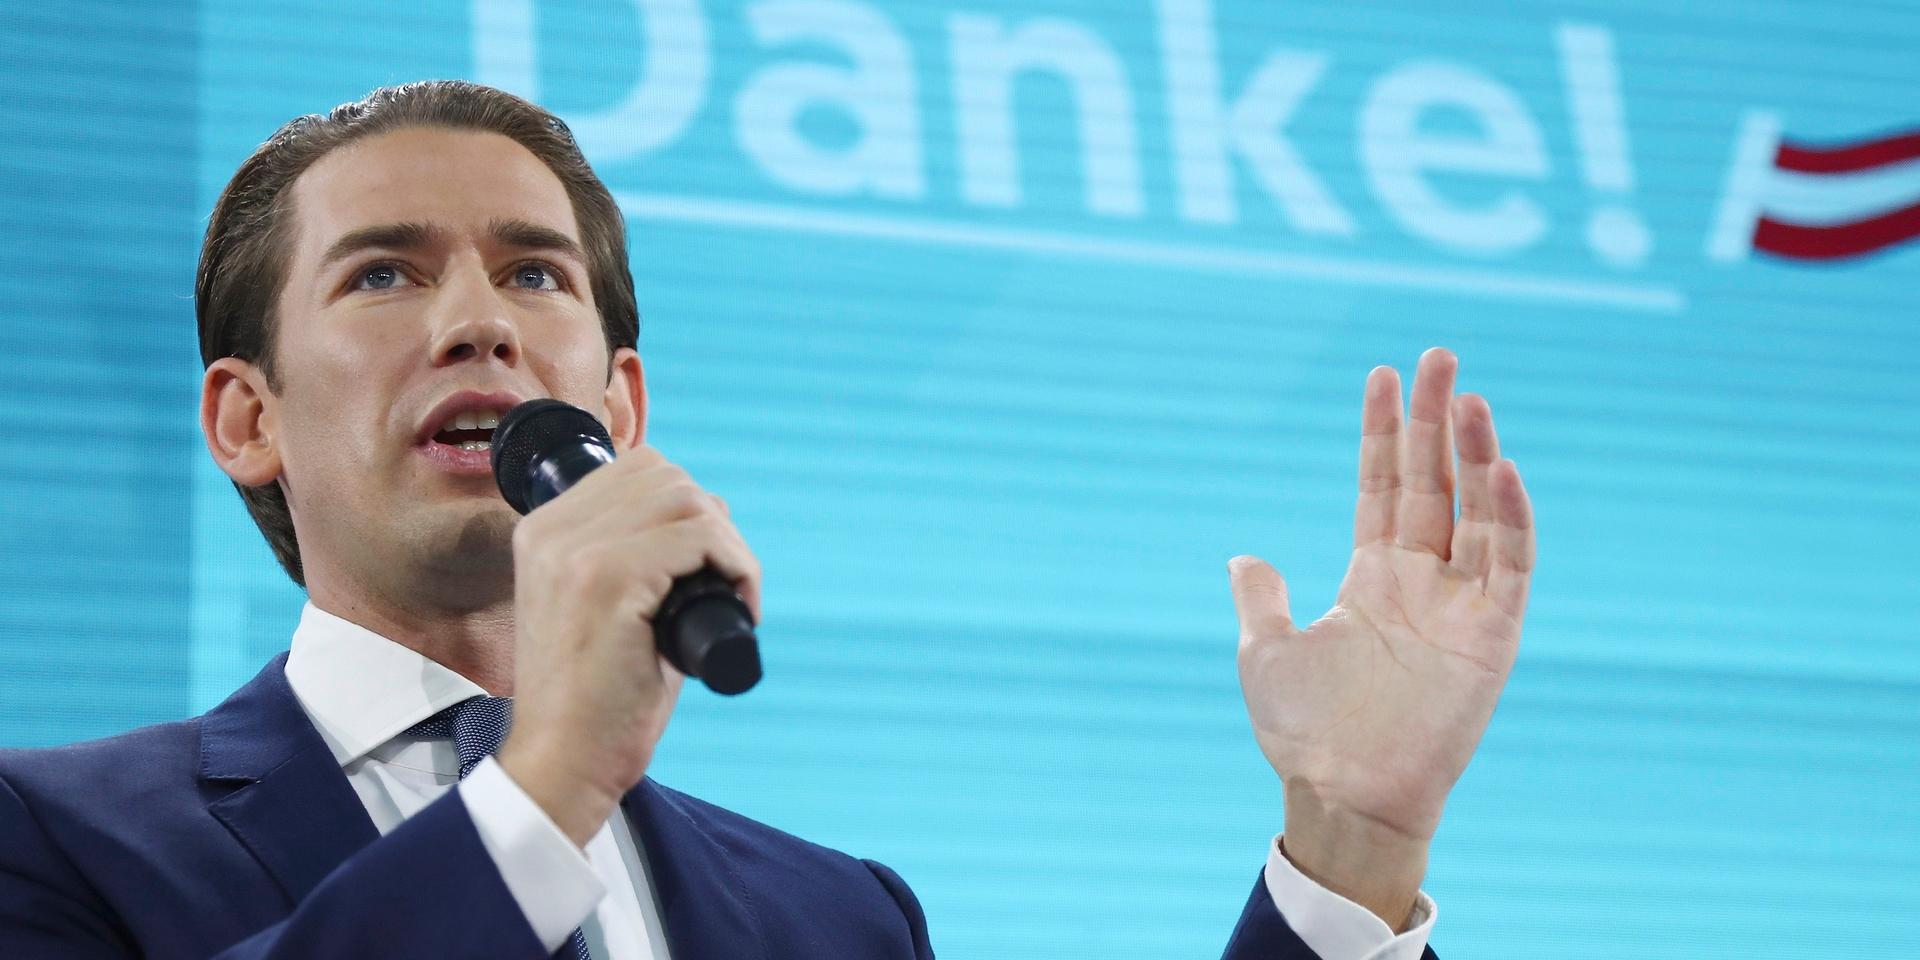 Sebastian Kurz slog om kursen när han tog över ÖVP 2017, började kalla partiet för 'Det nya folkpartiet' och ändrade partifärg från svart till turkos. Arkivbild.